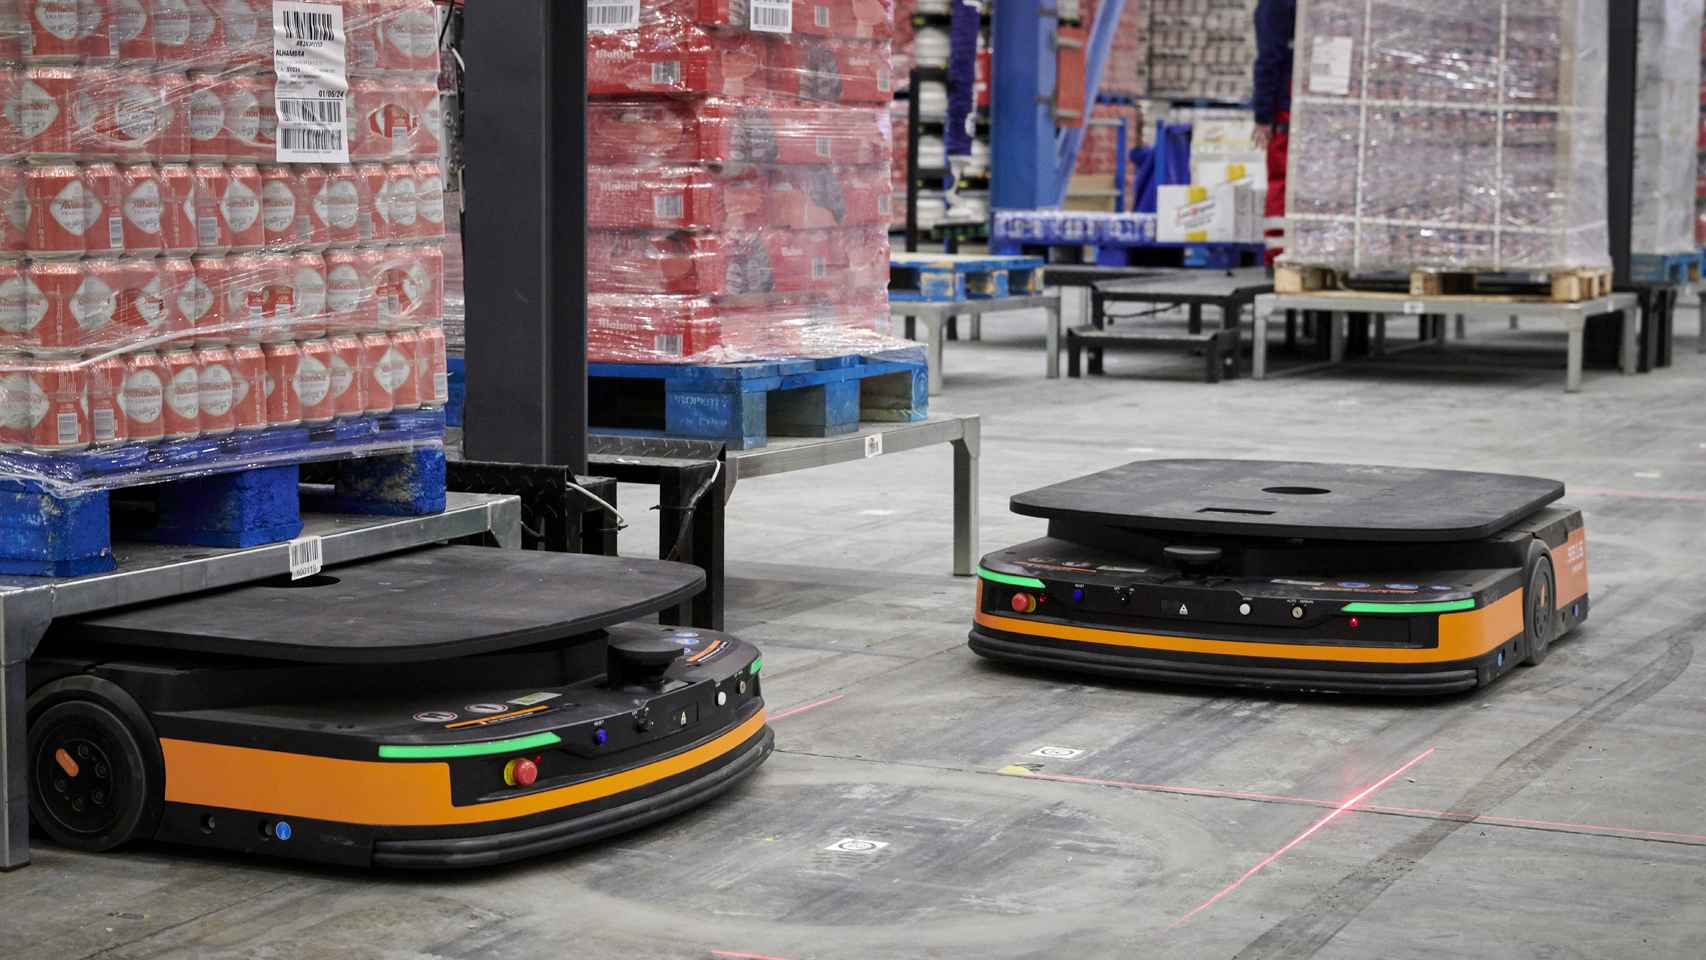 Los robots, equipados con sensores para evitar colisiones, mueven la mercancía por el almacén.